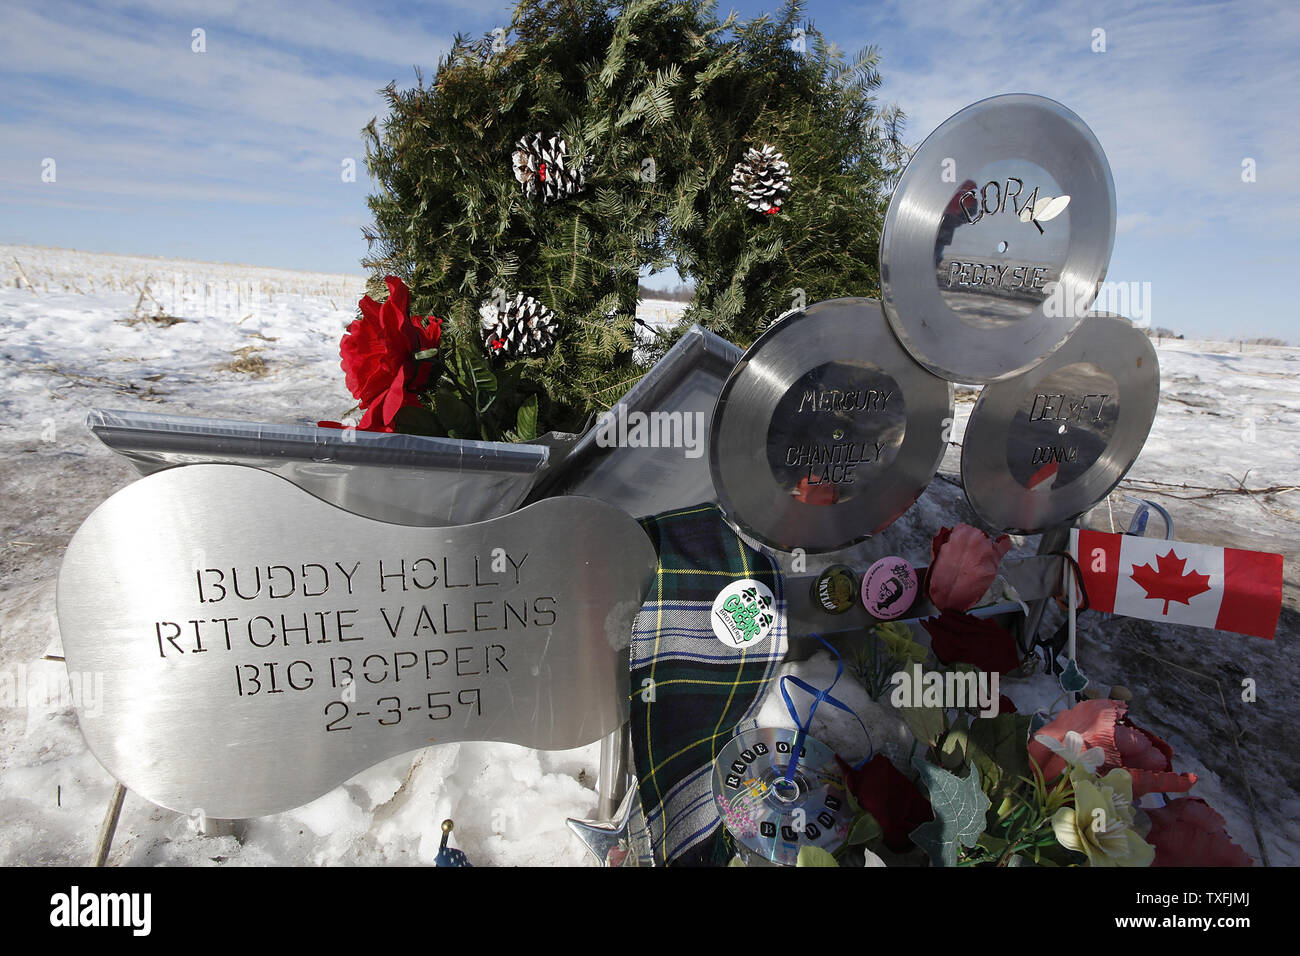 Blumen und Würdigungen sind auf der Website der Flugzeugabsturz, Buddy Holly, Ritchie Valens und J. S. 'The Big Bopper' Richardson in der Nähe des Clear Lake, Iowa am 2. Februar 2009 getötet. Sänger Don McLean prägte den Satz "der Tag, an dem die Musik starb" in seinem Hit song American Pie, die sich auf den Tod der drei Rock 'n' Roll Pioniere in den frühen Morgenstunden des 3. Februar 1959. Tausende von Menschen kam auf freier See der 50. Jahrestag zu feiern der Tag, an dem die Musik starb". (UPI Foto/Brian Kersey) Stockfoto